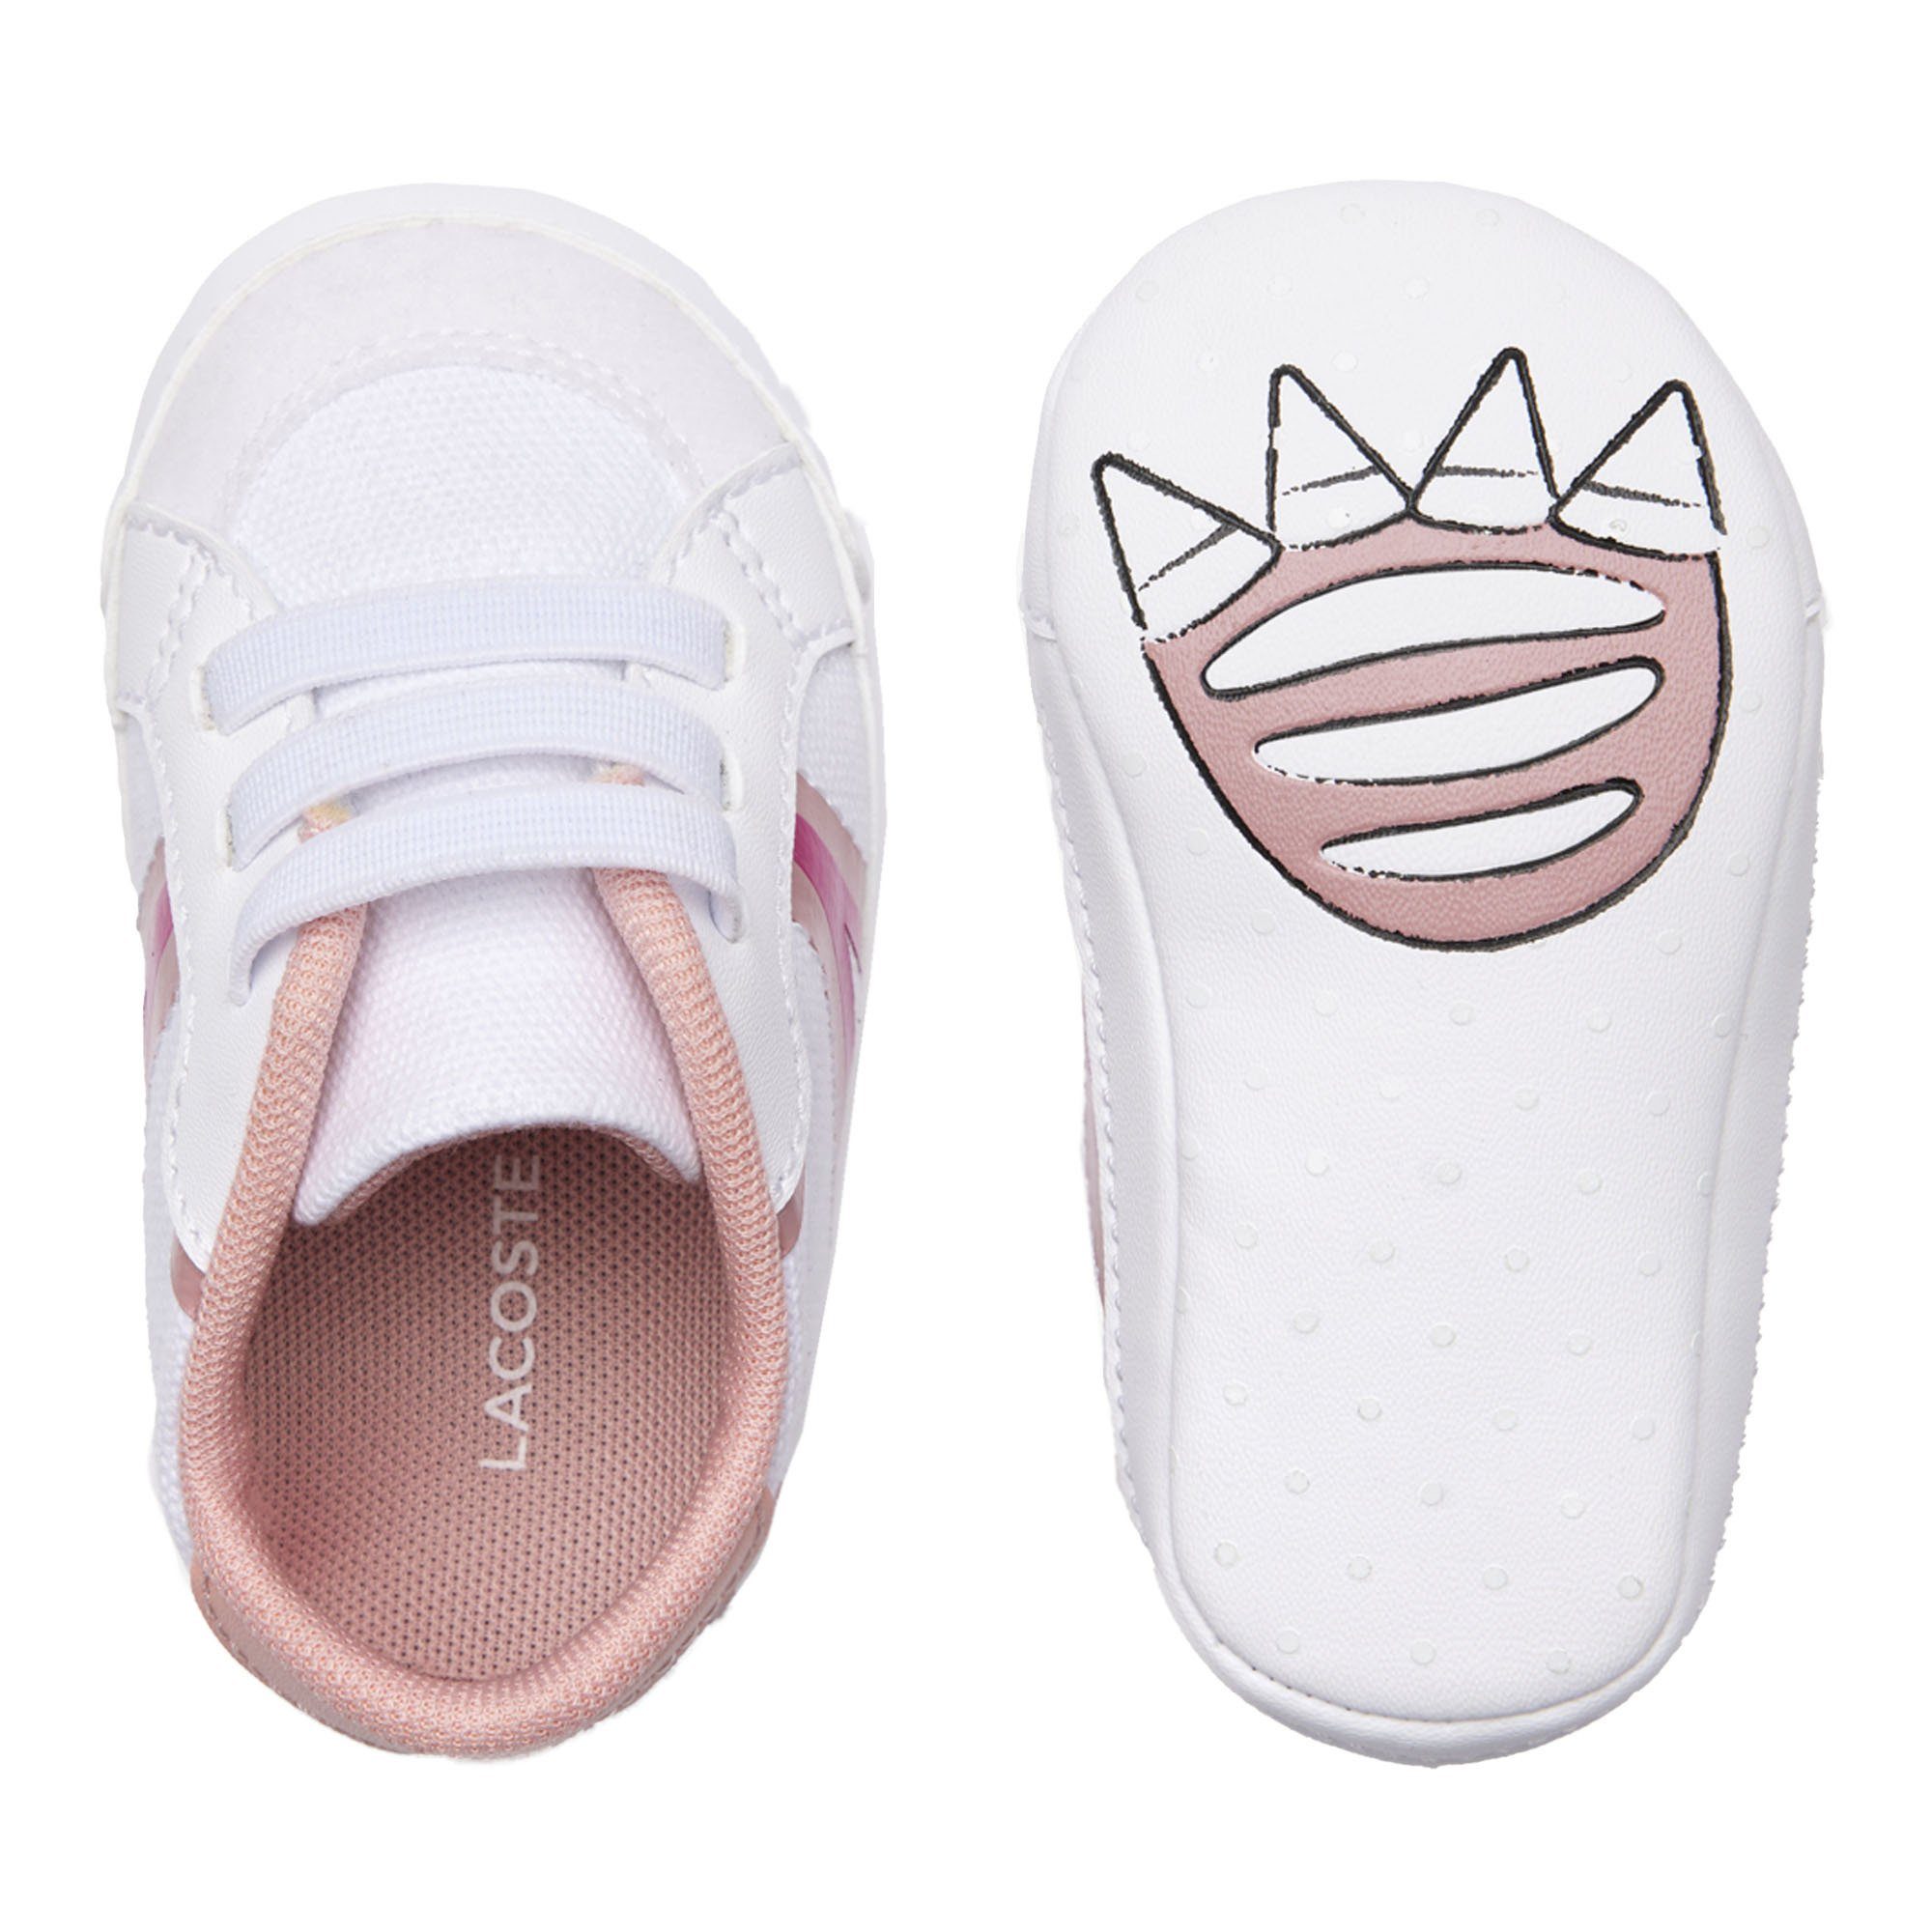 Lacoste Sneaker, L004 - Krabbelschuhe, Krabbelschuh Weiß/Pink Schuhe Cub, Baby